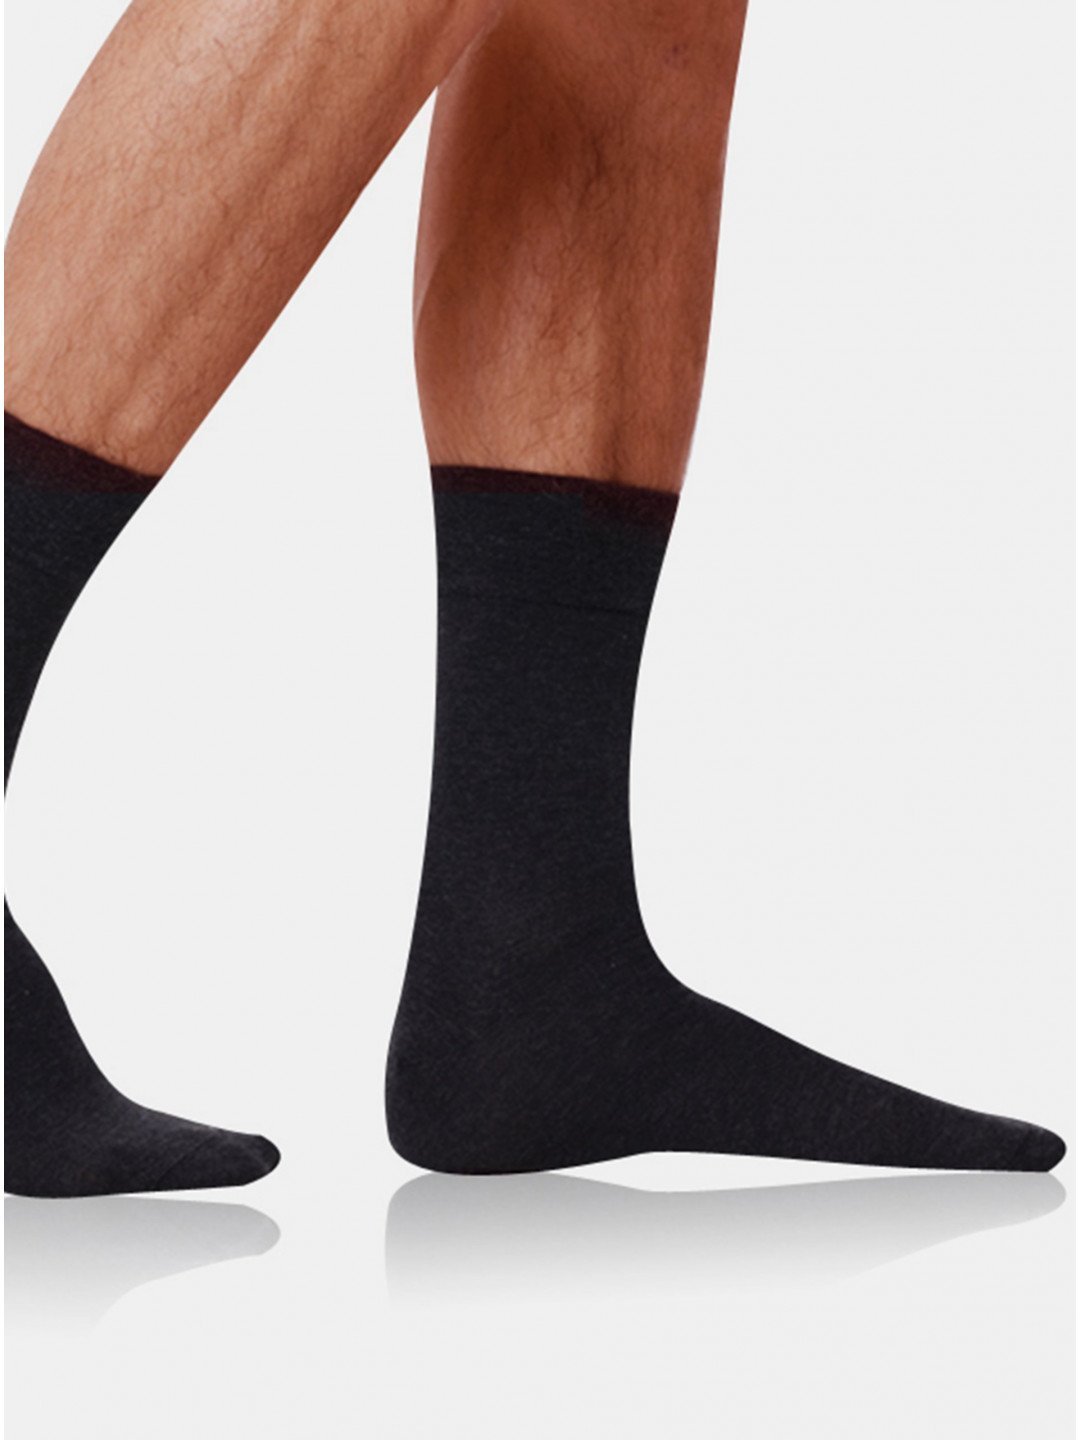 Tmavě šedé pánské ponožky Bellinda COTTON MAXX MEN SOCKS